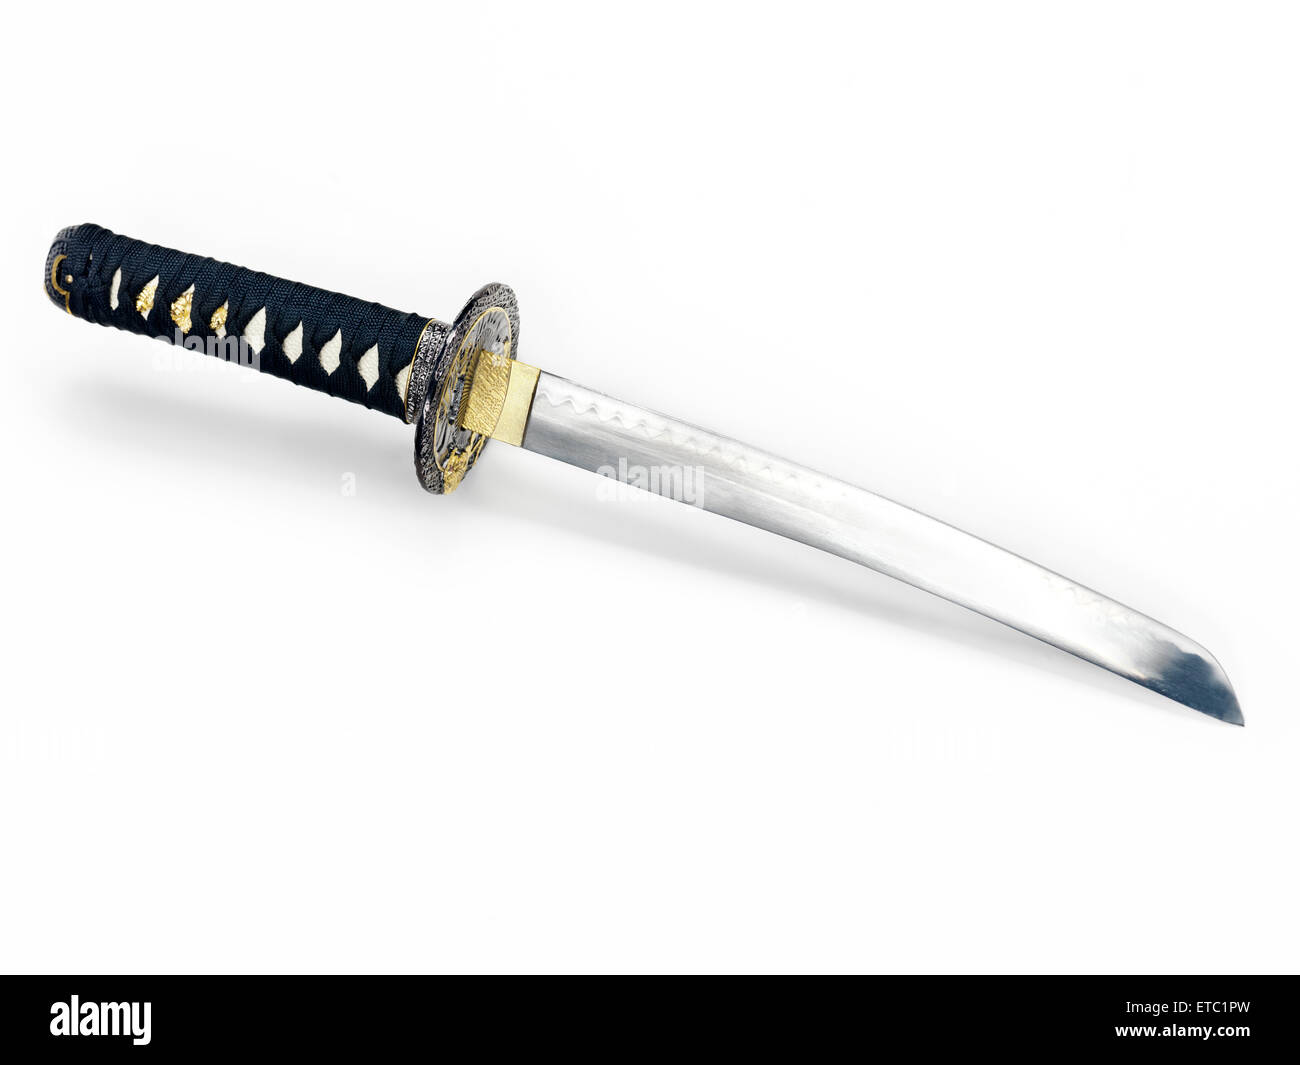 Japanisches Tanto Messer Kurzschwert isoliert auf weißem Hintergrund  Stockfotografie - Alamy